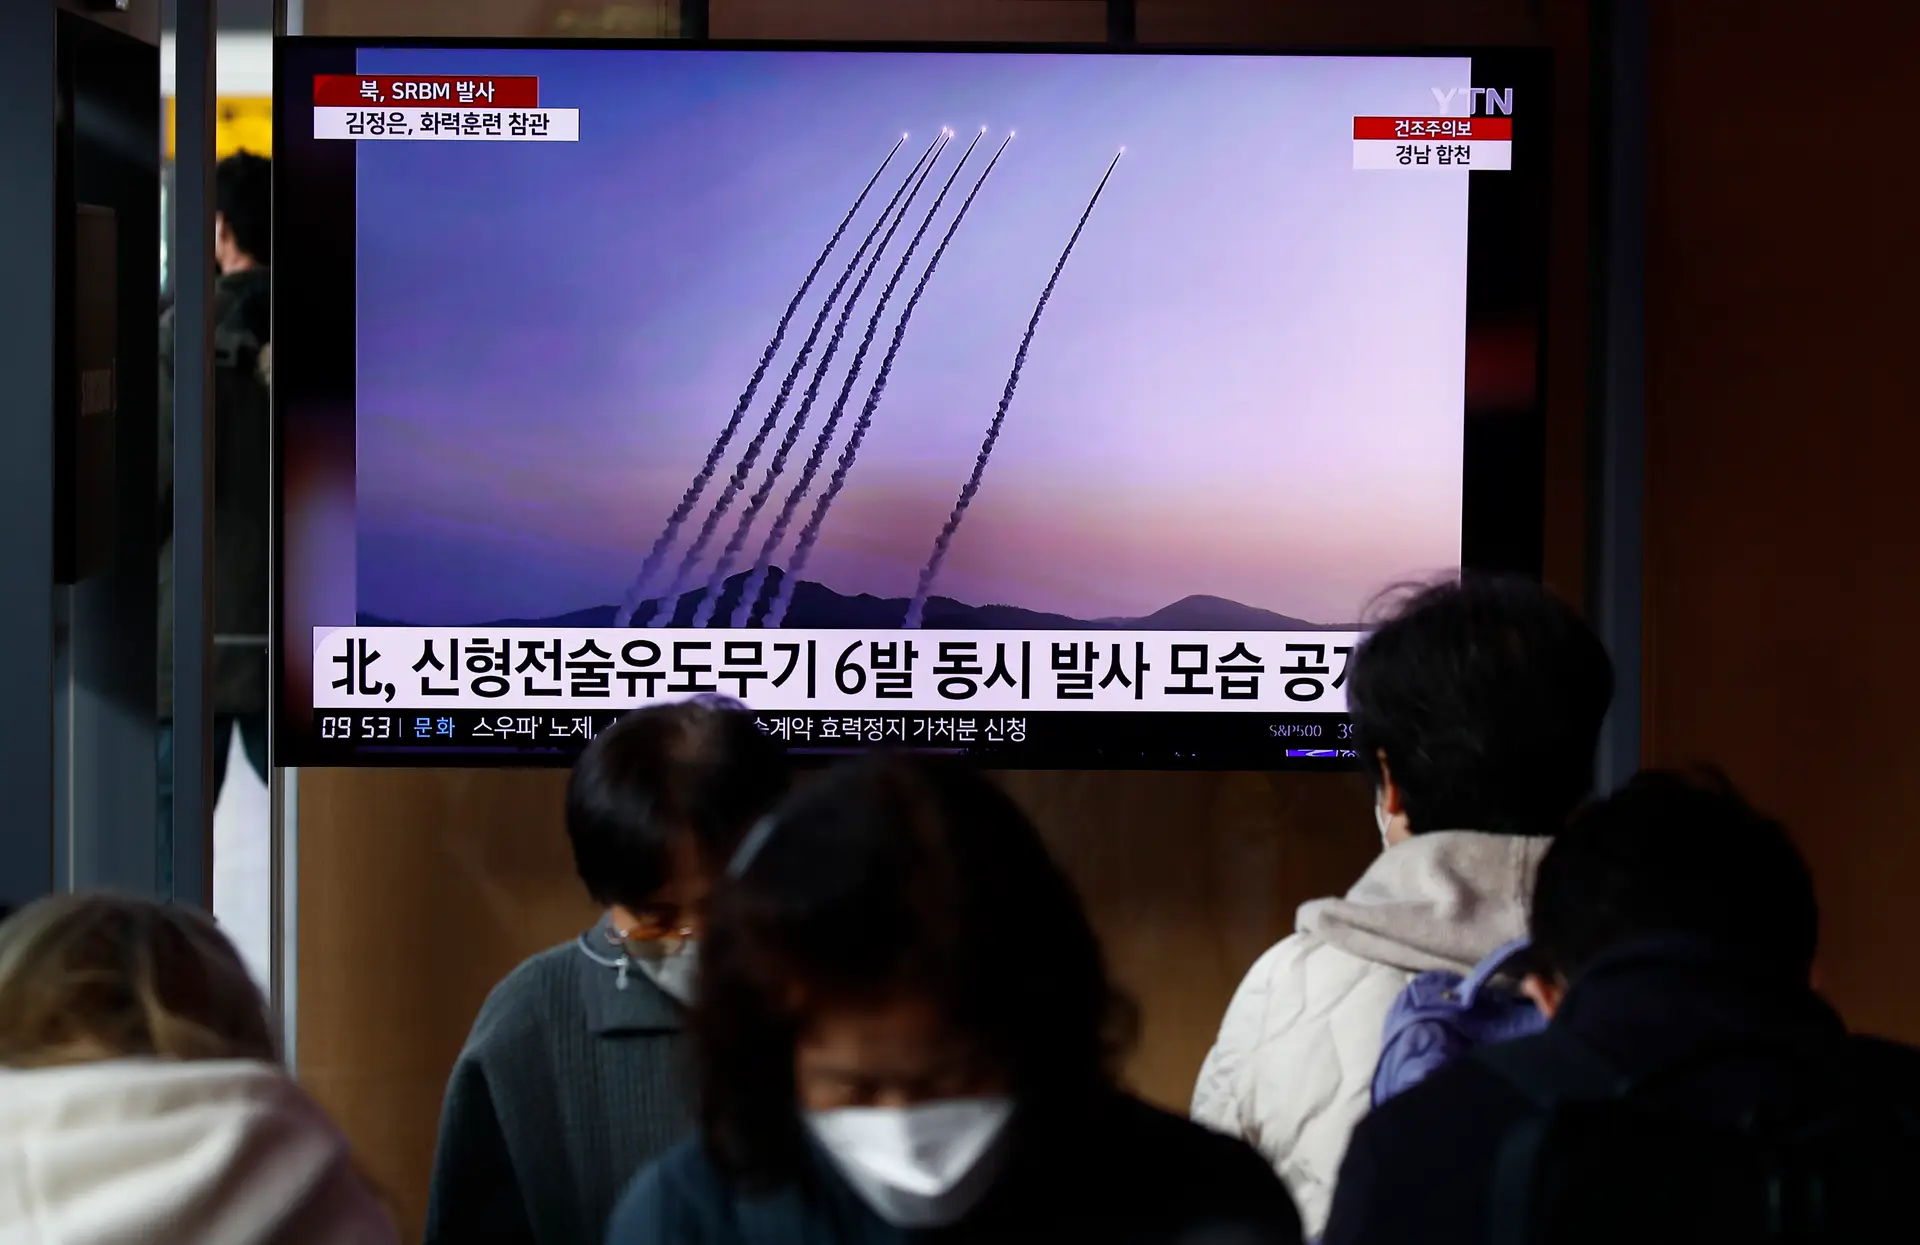 Coreia do Norte disparou pelo menos mais um míssil balístico